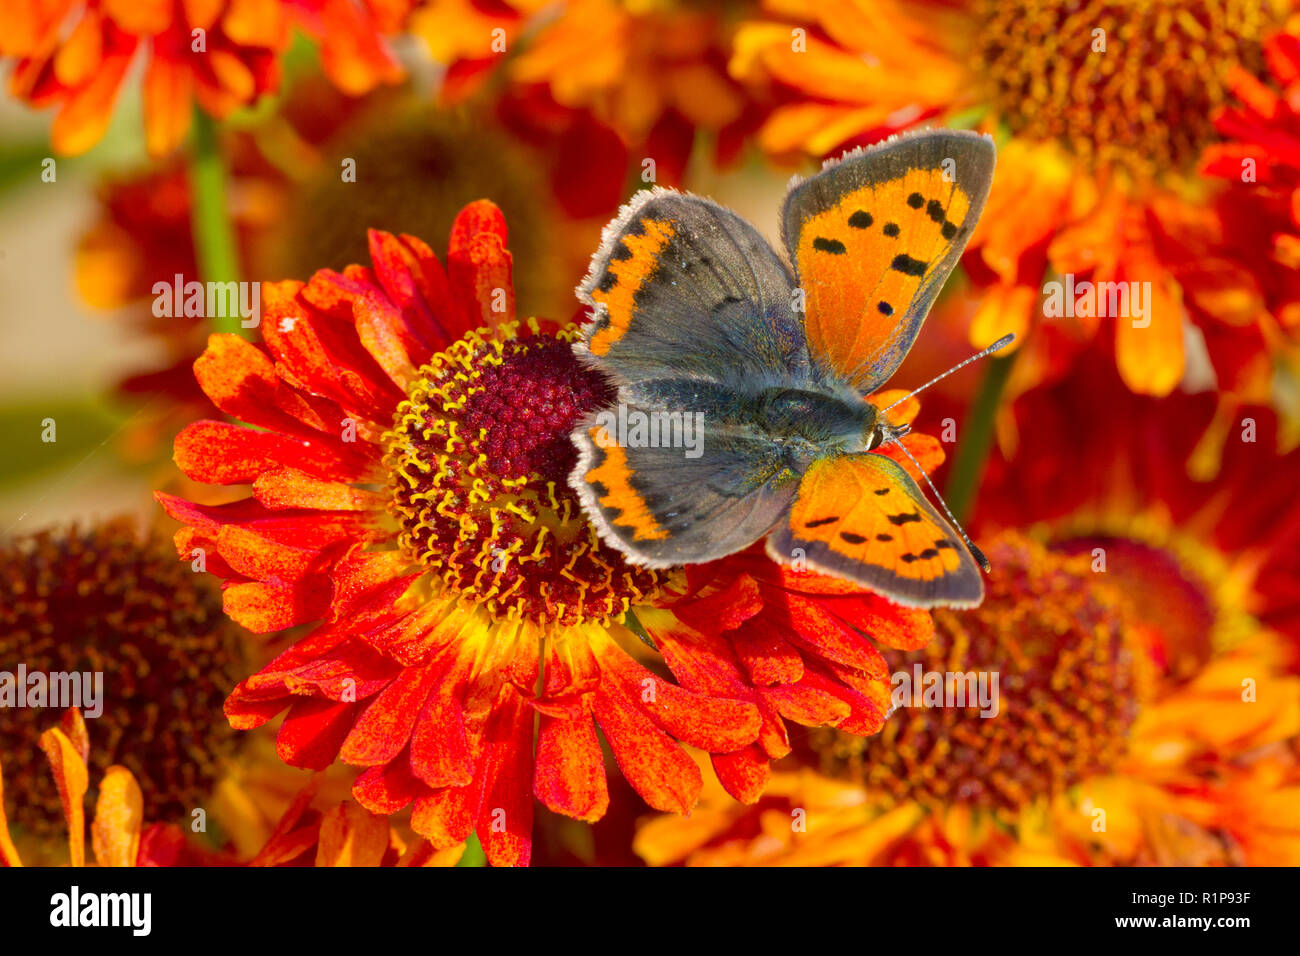 Petite phlaeus (Lycaena) papillon adulte se nourrit de Perrenial tournesol (Helianthus) fleurs dans un jardin. Powys, Pays de Galles. Septembre. Banque D'Images